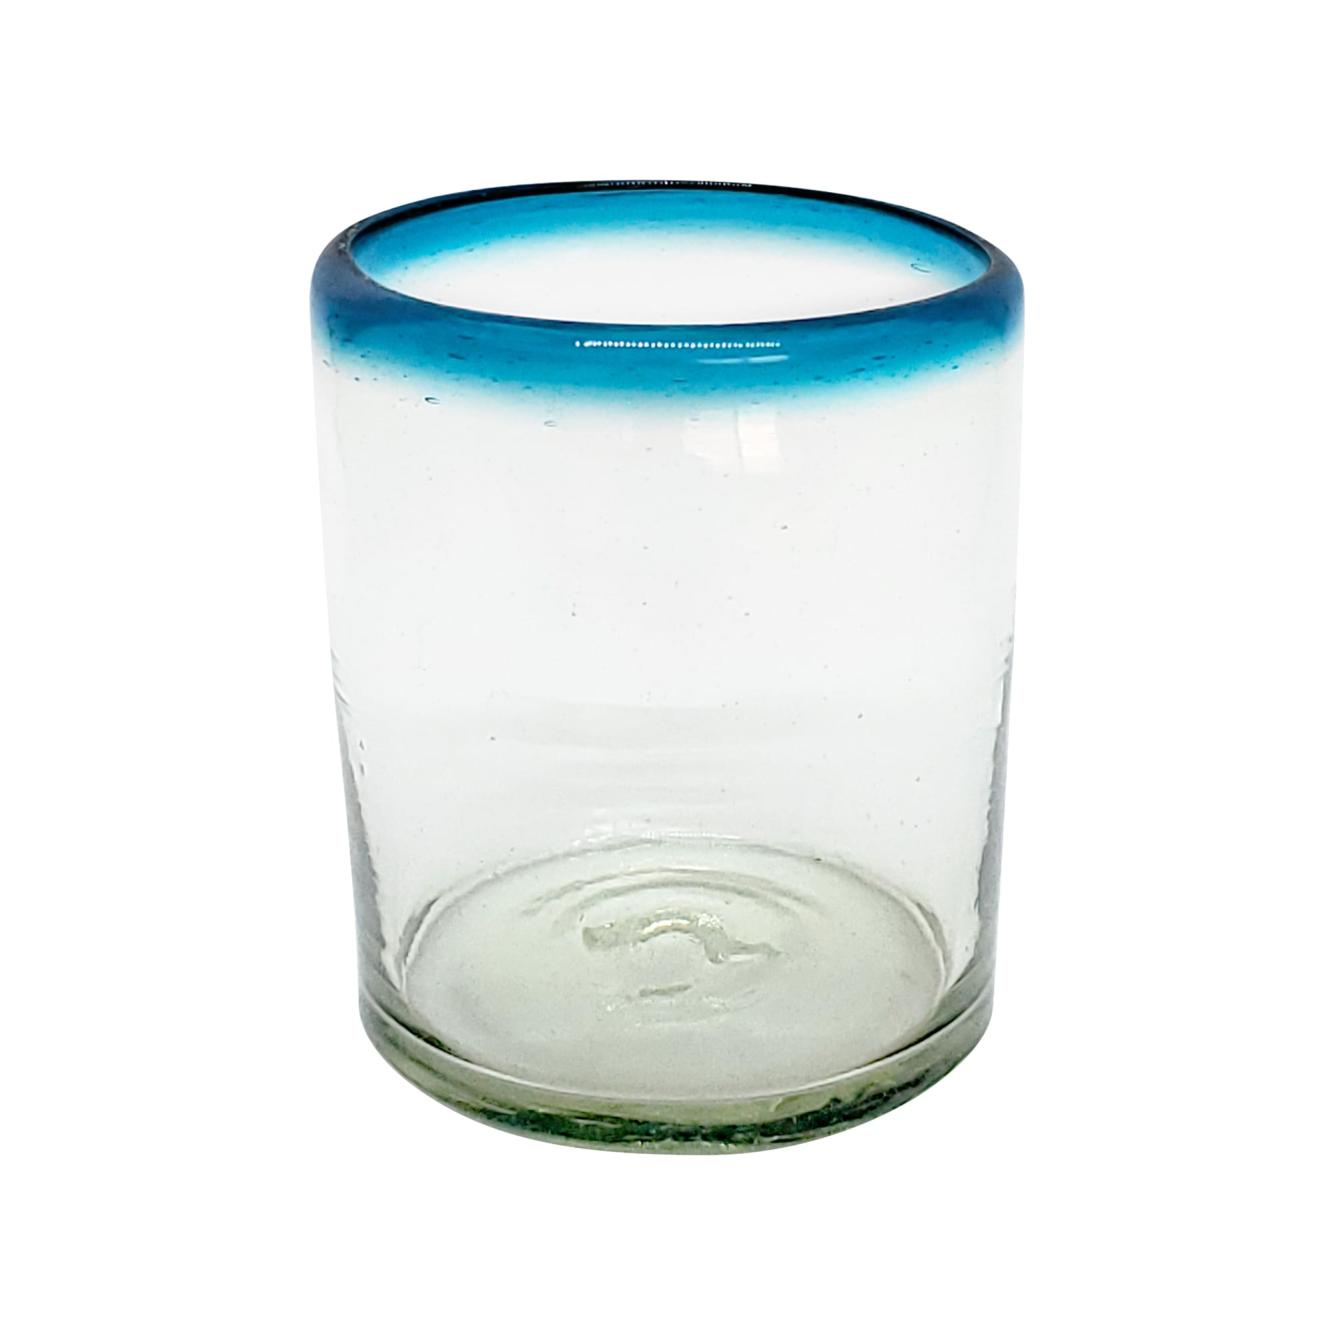 VIDRIO SOPLADO / Juego de 6 vasos chicos con borde azul aqua / stos vasos chicos son un gran complemento para su juego de jarra y vasos grandes.